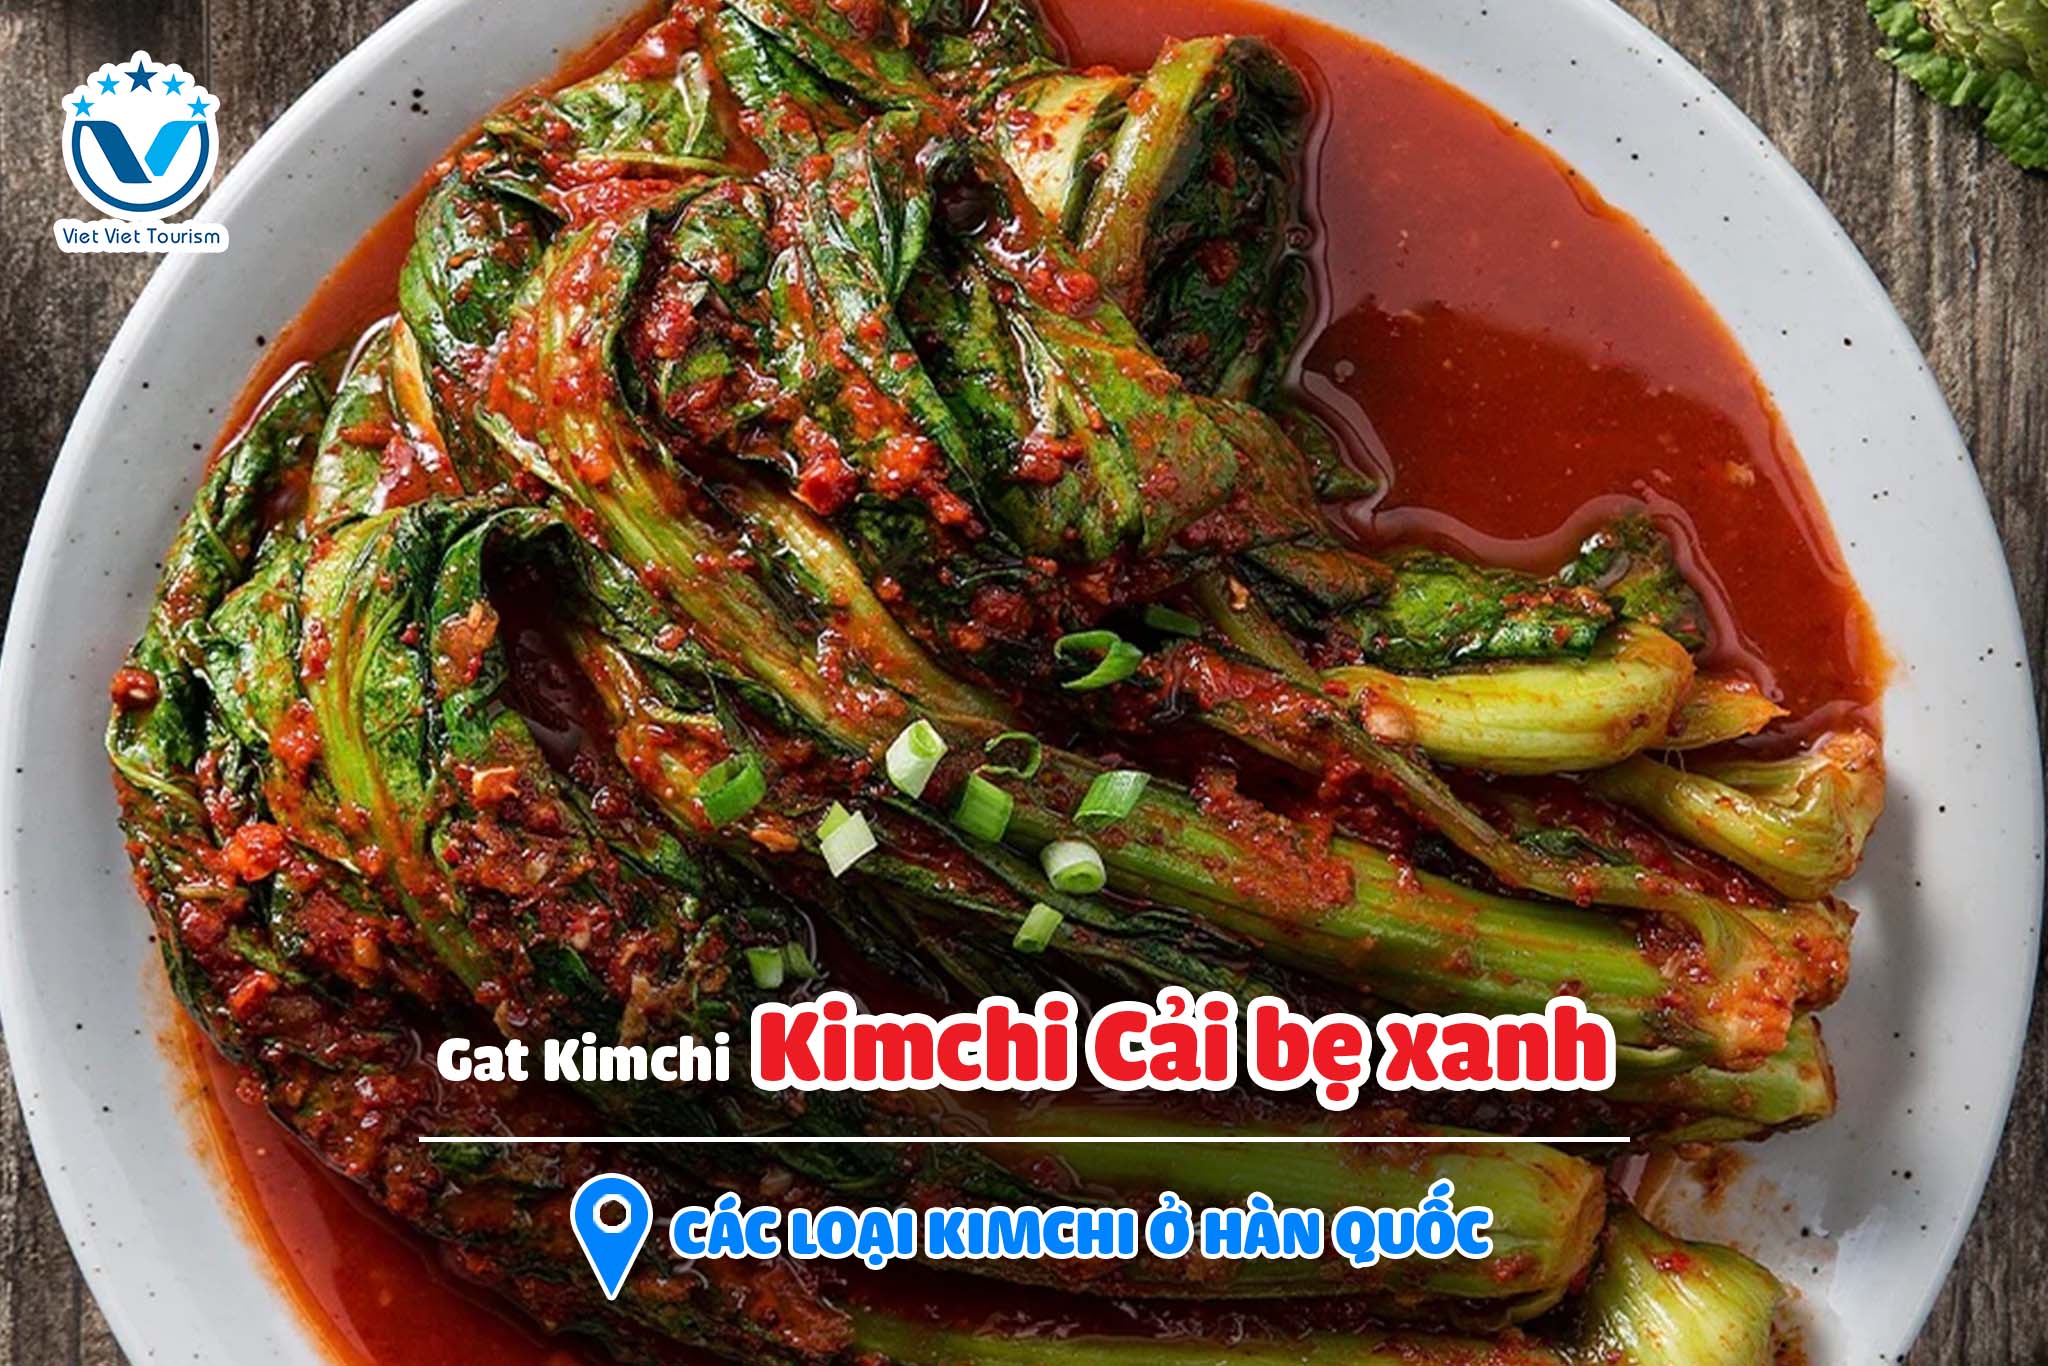 Kimchi VVT 8. Gat Kimchi